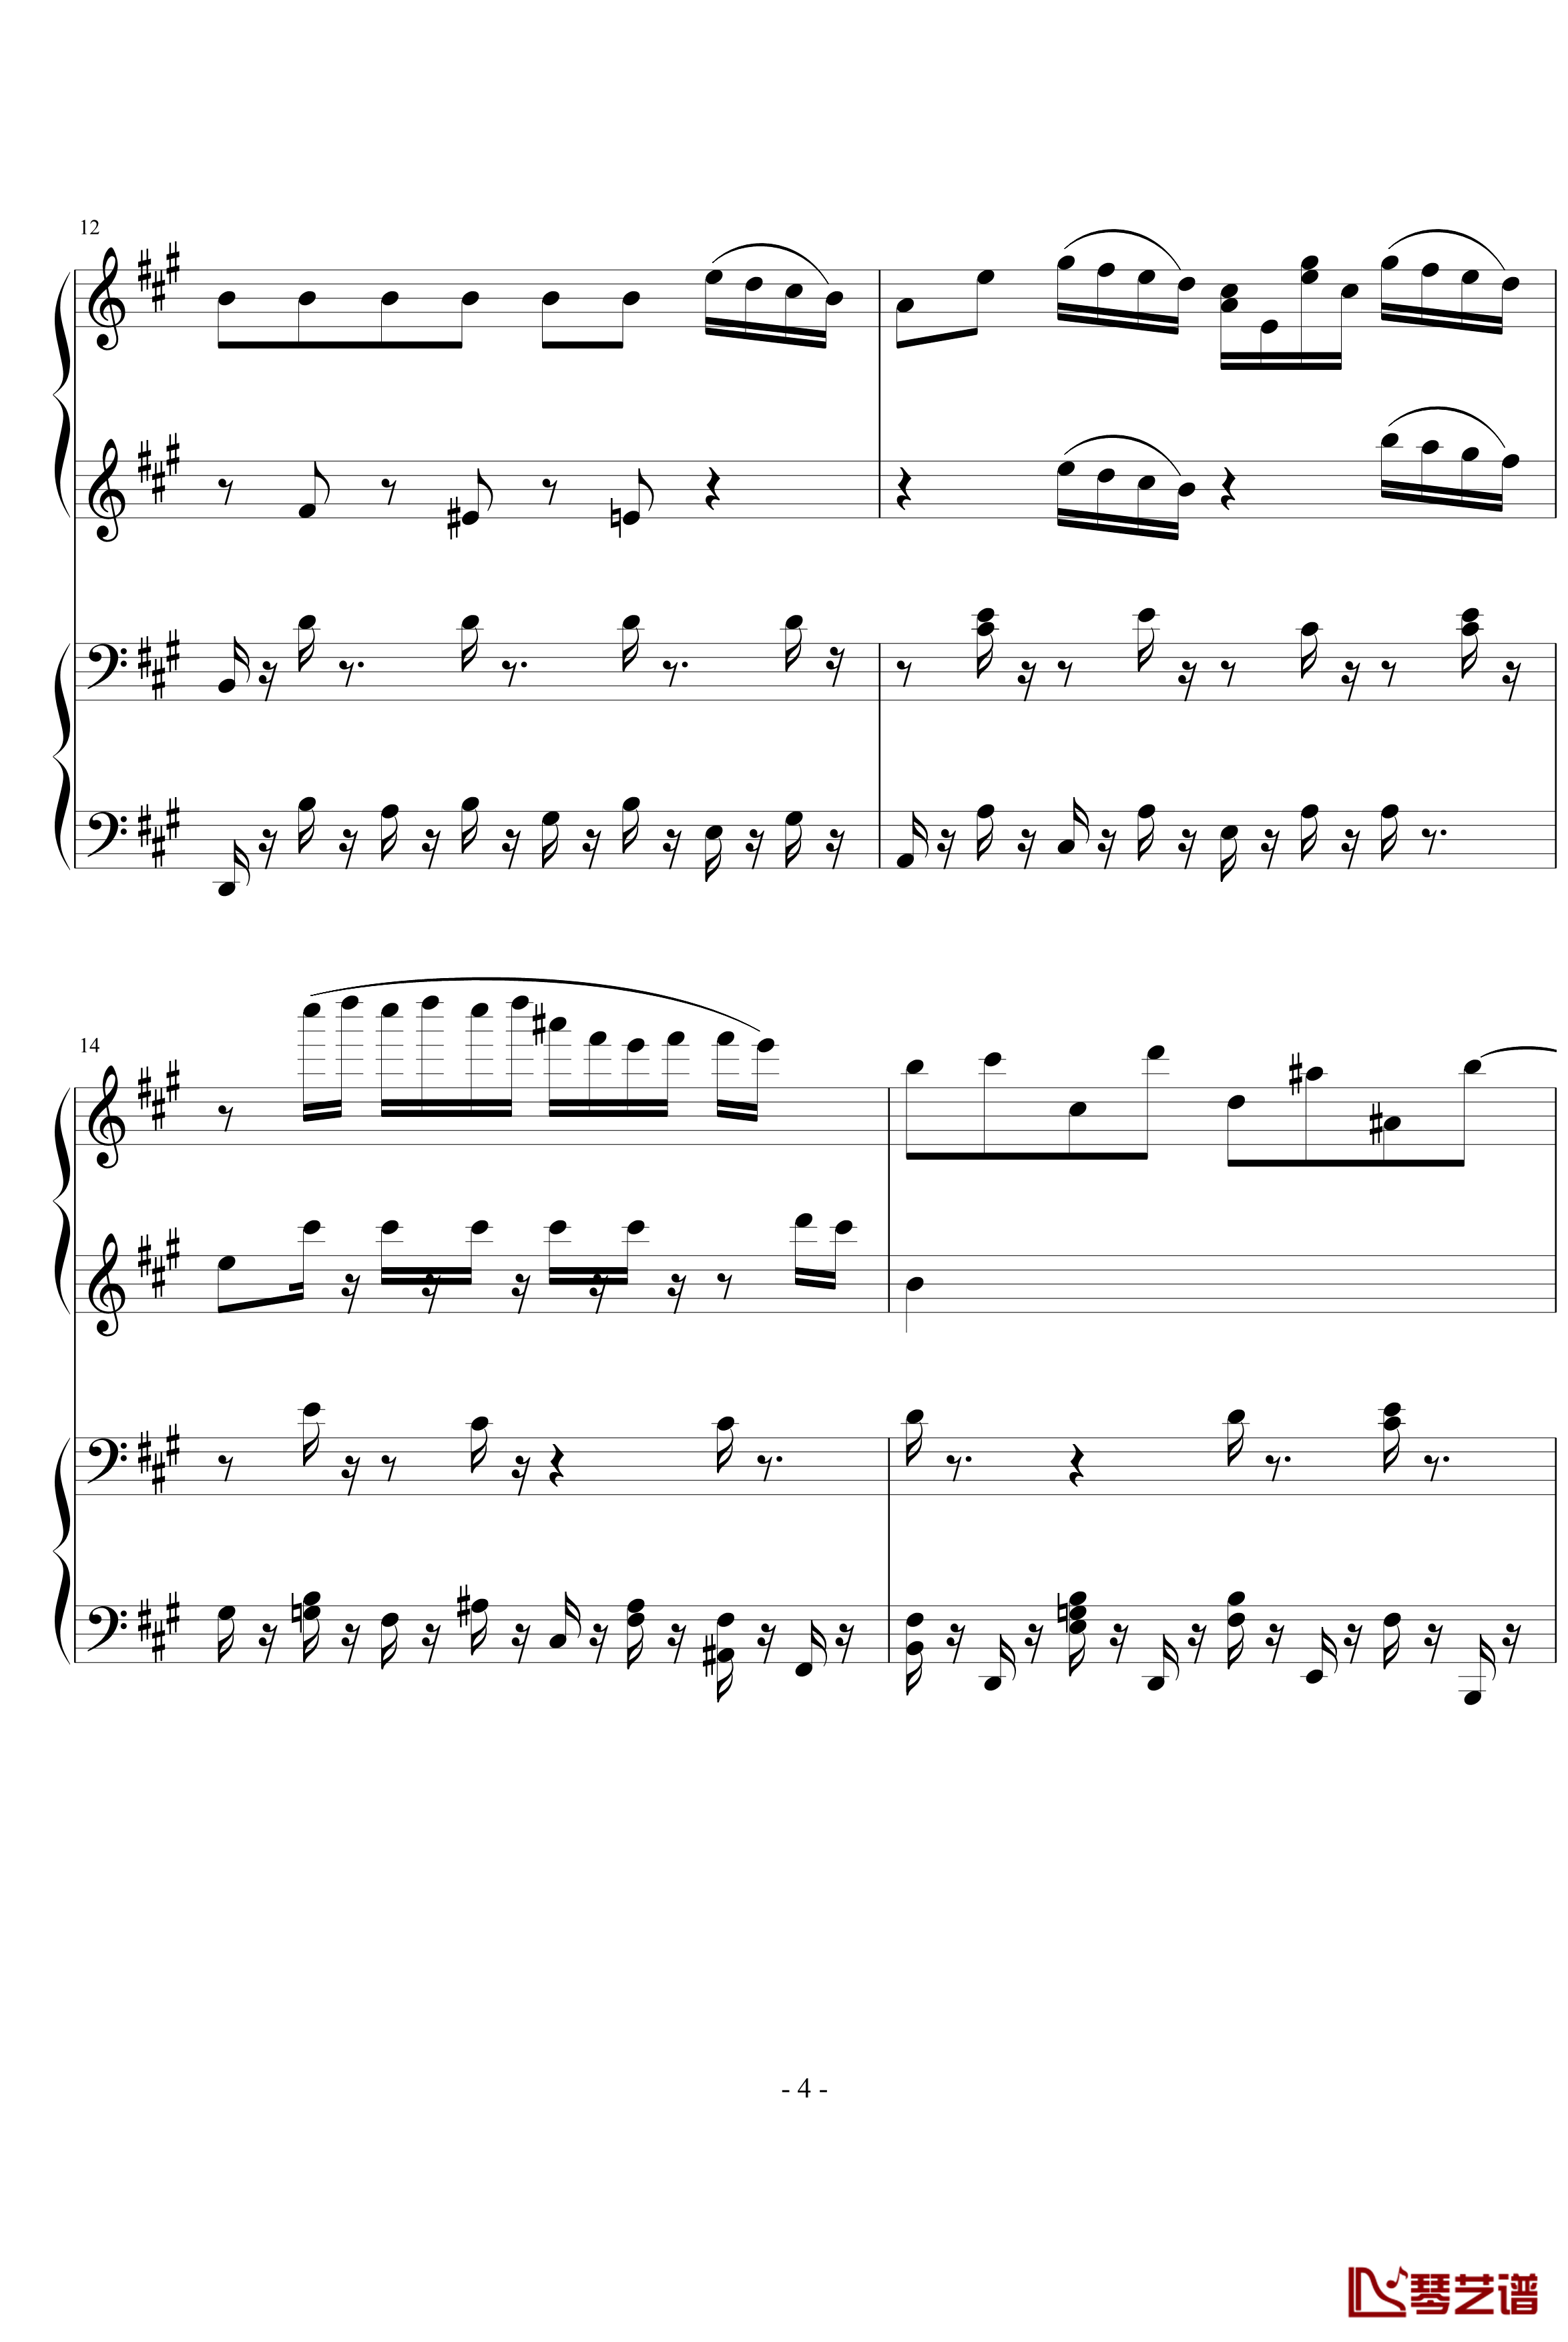 四小天鹅舞曲钢琴谱-柴科夫斯基-Peter Ilyich Tchaikovsky4